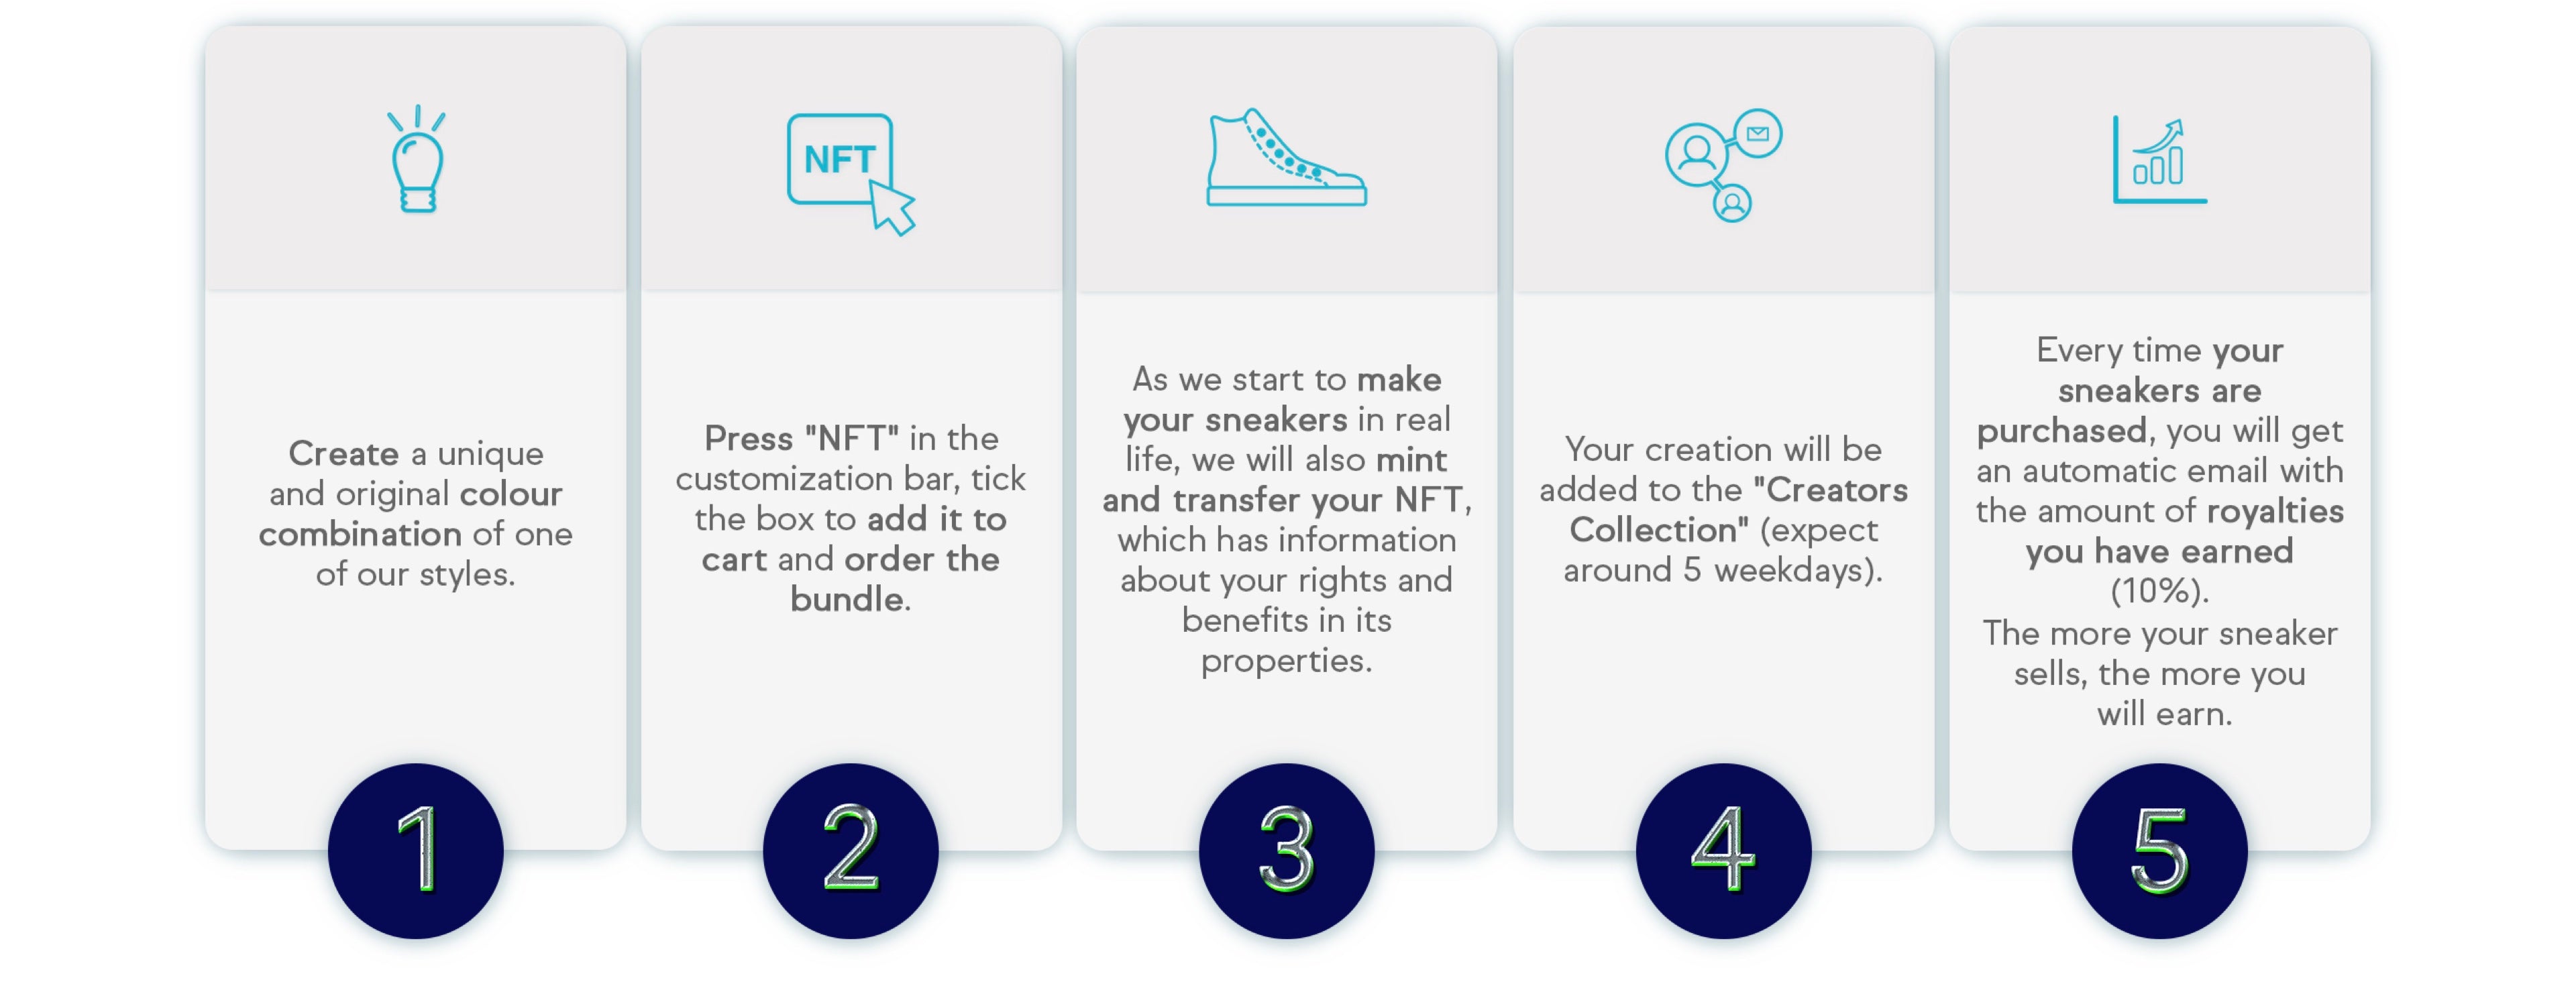 Informazioni per la creazione di scarpe personalizzate NFT.